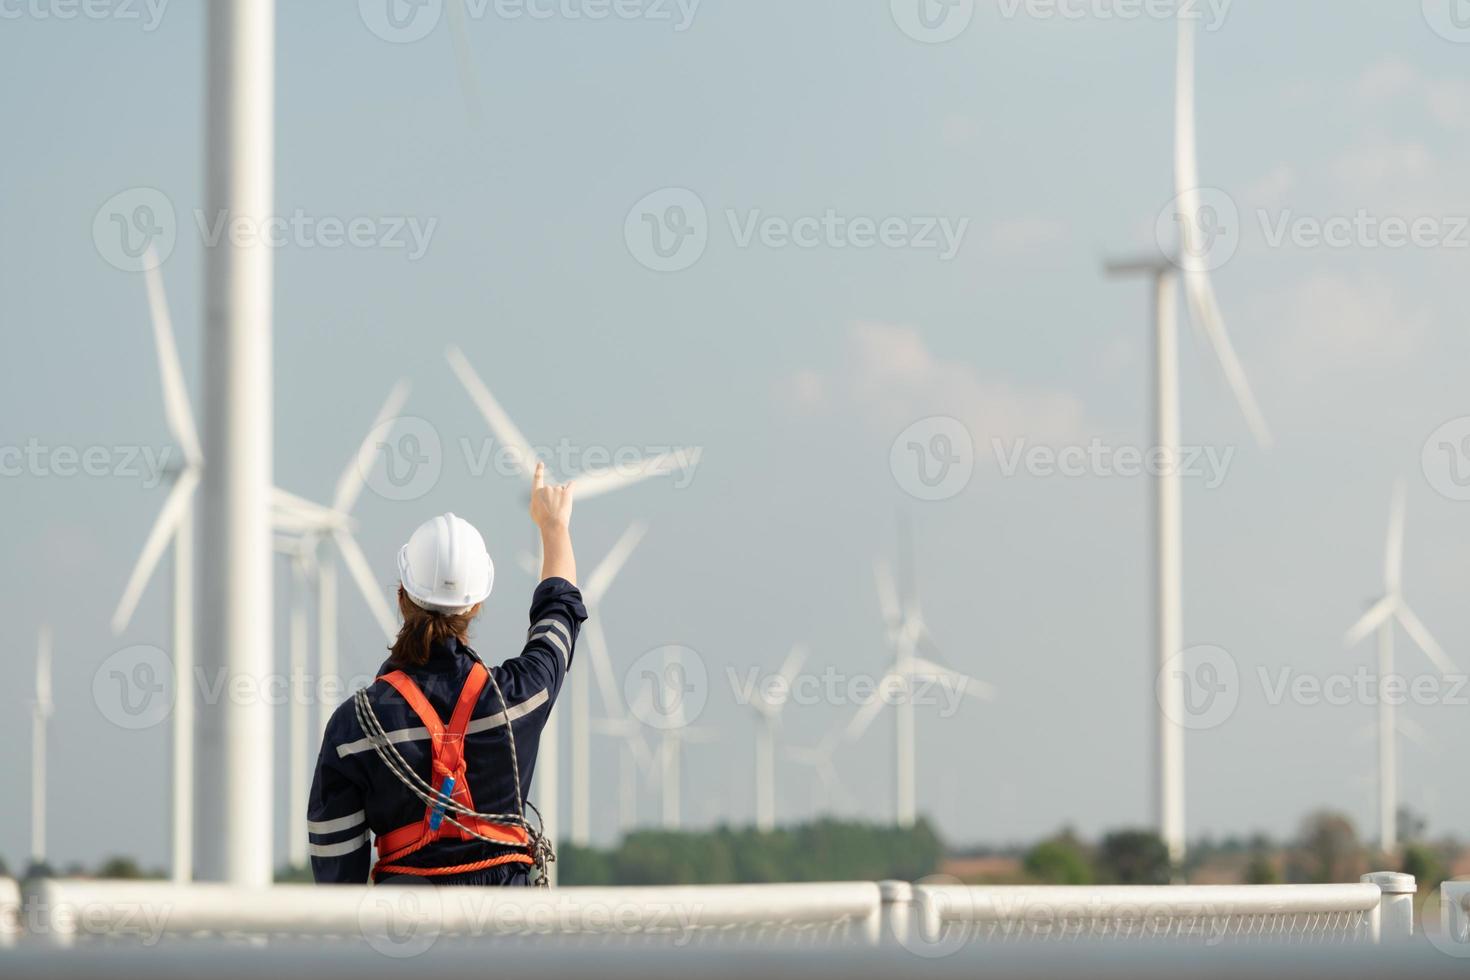 ingeniero a natural energía viento turbina sitio con un misión a escalada arriba a el viento turbina cuchillas a inspeccionar el operación de grande viento turbinas ese convierte viento energía dentro eléctrico energía foto